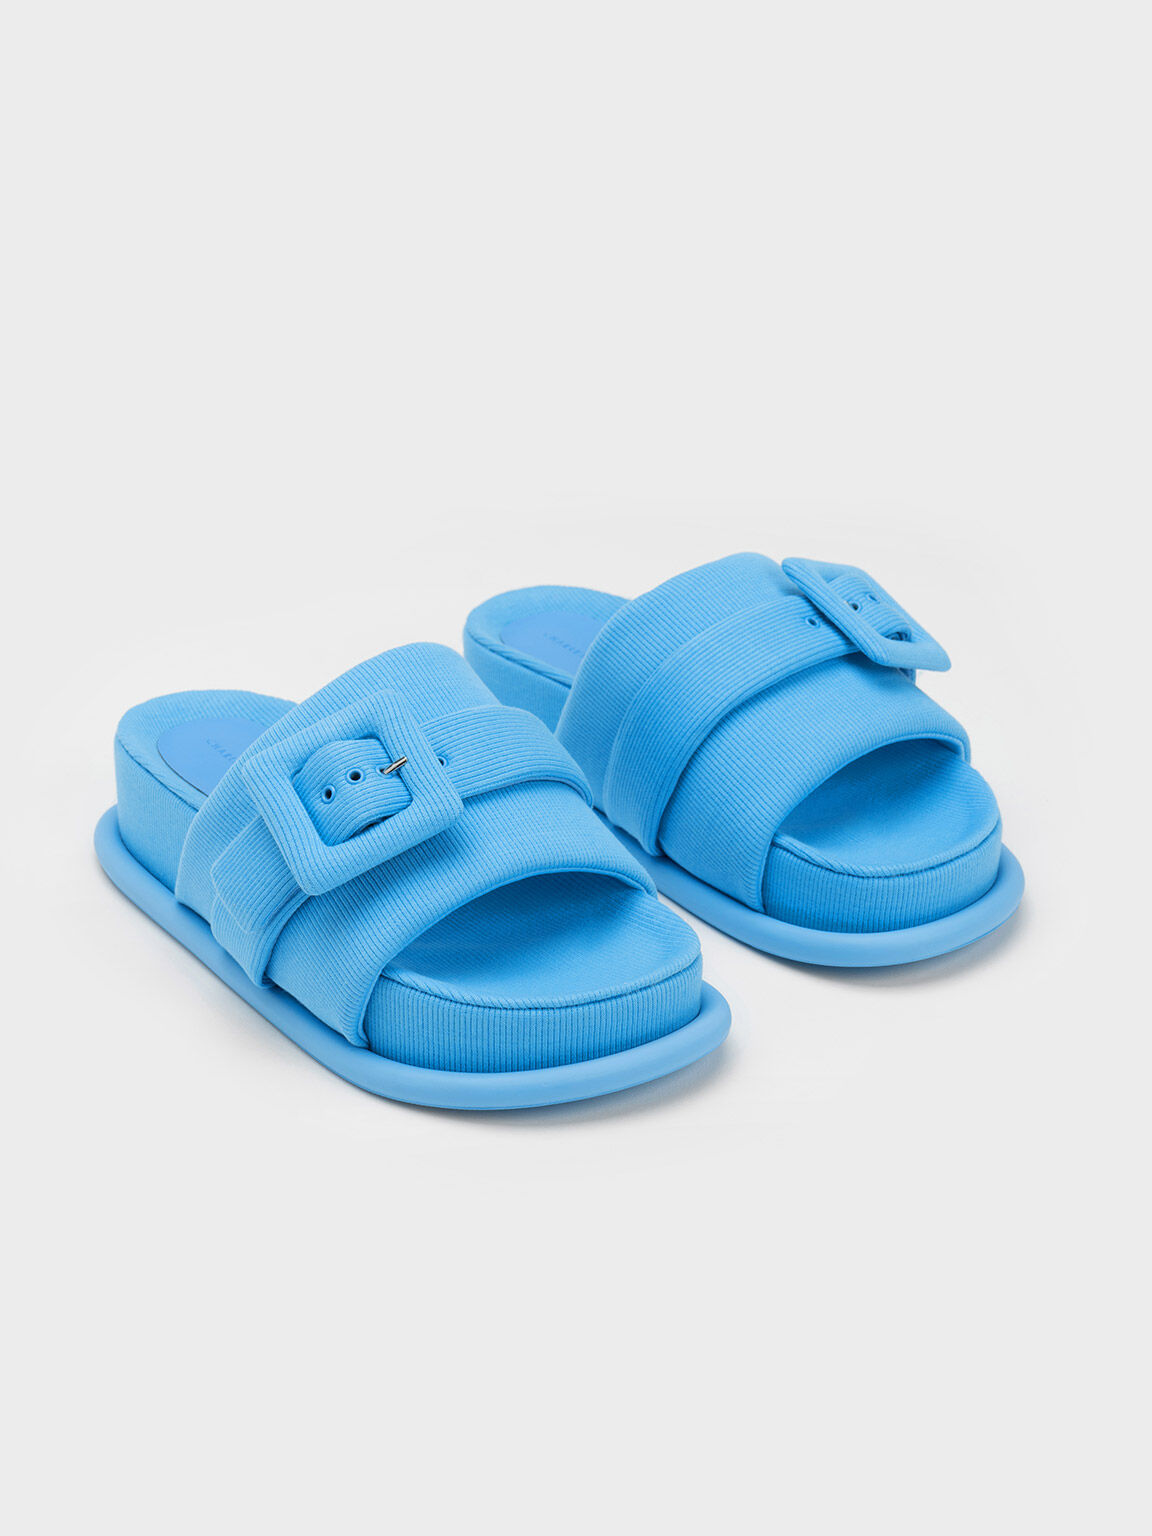 Sinead Woven Buckled Slide Sandals, Blue, hi-res